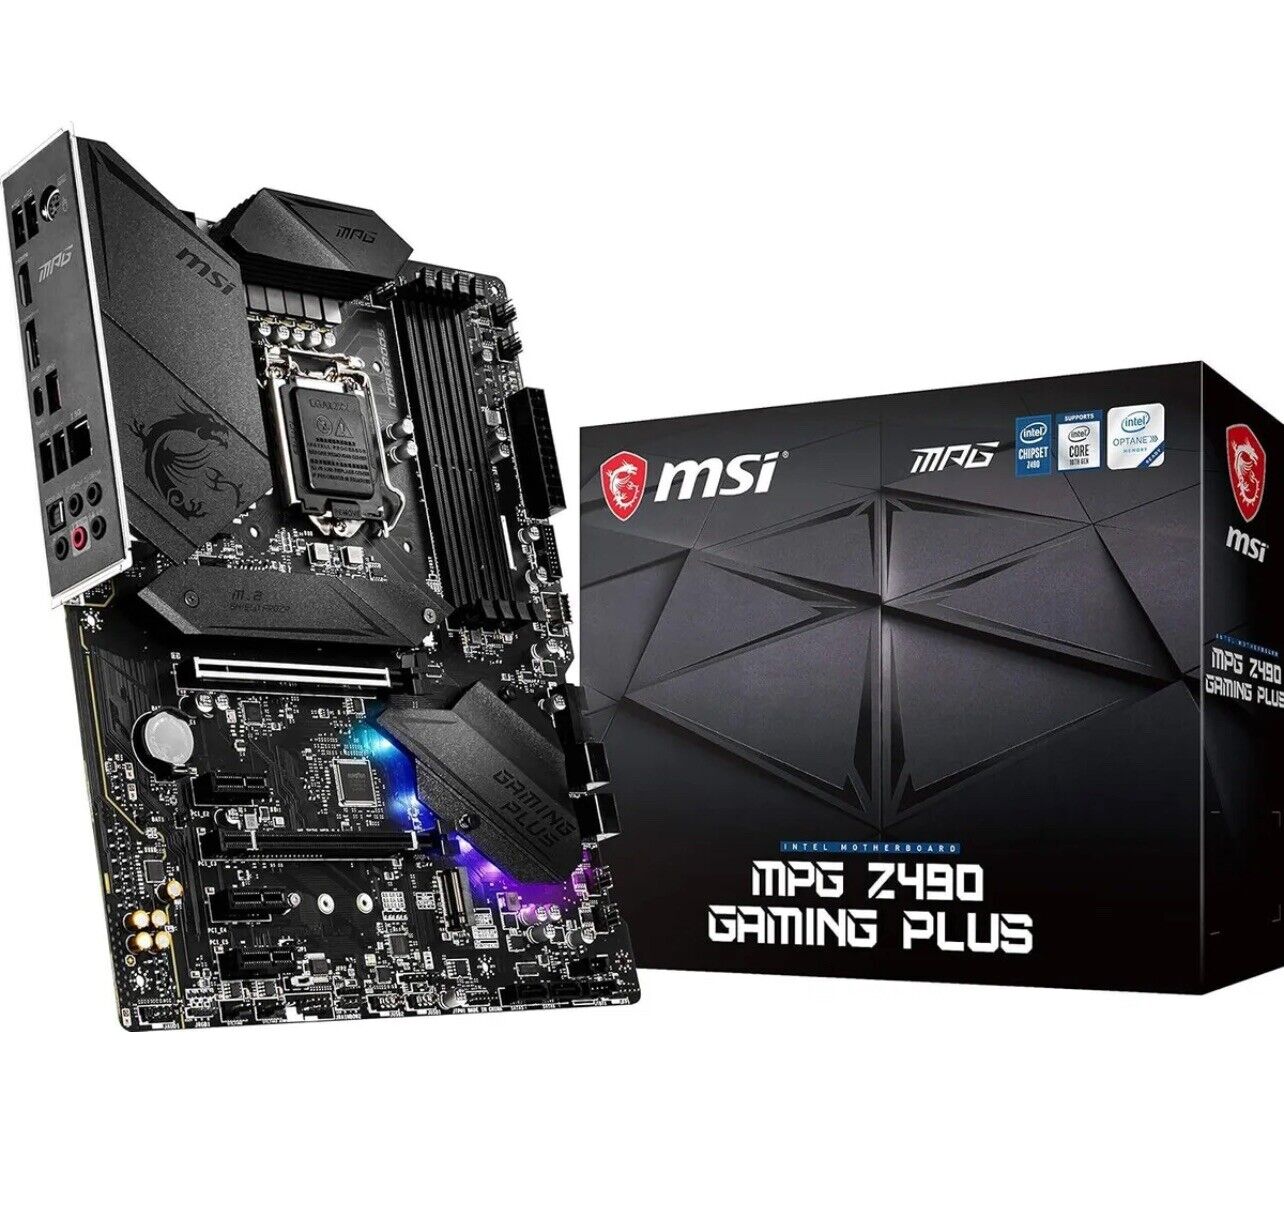 MSI MPG Z490 Gaming Plus Gaming Motherboard (ATX, 10th Gen Intel Core, LGA 1200)